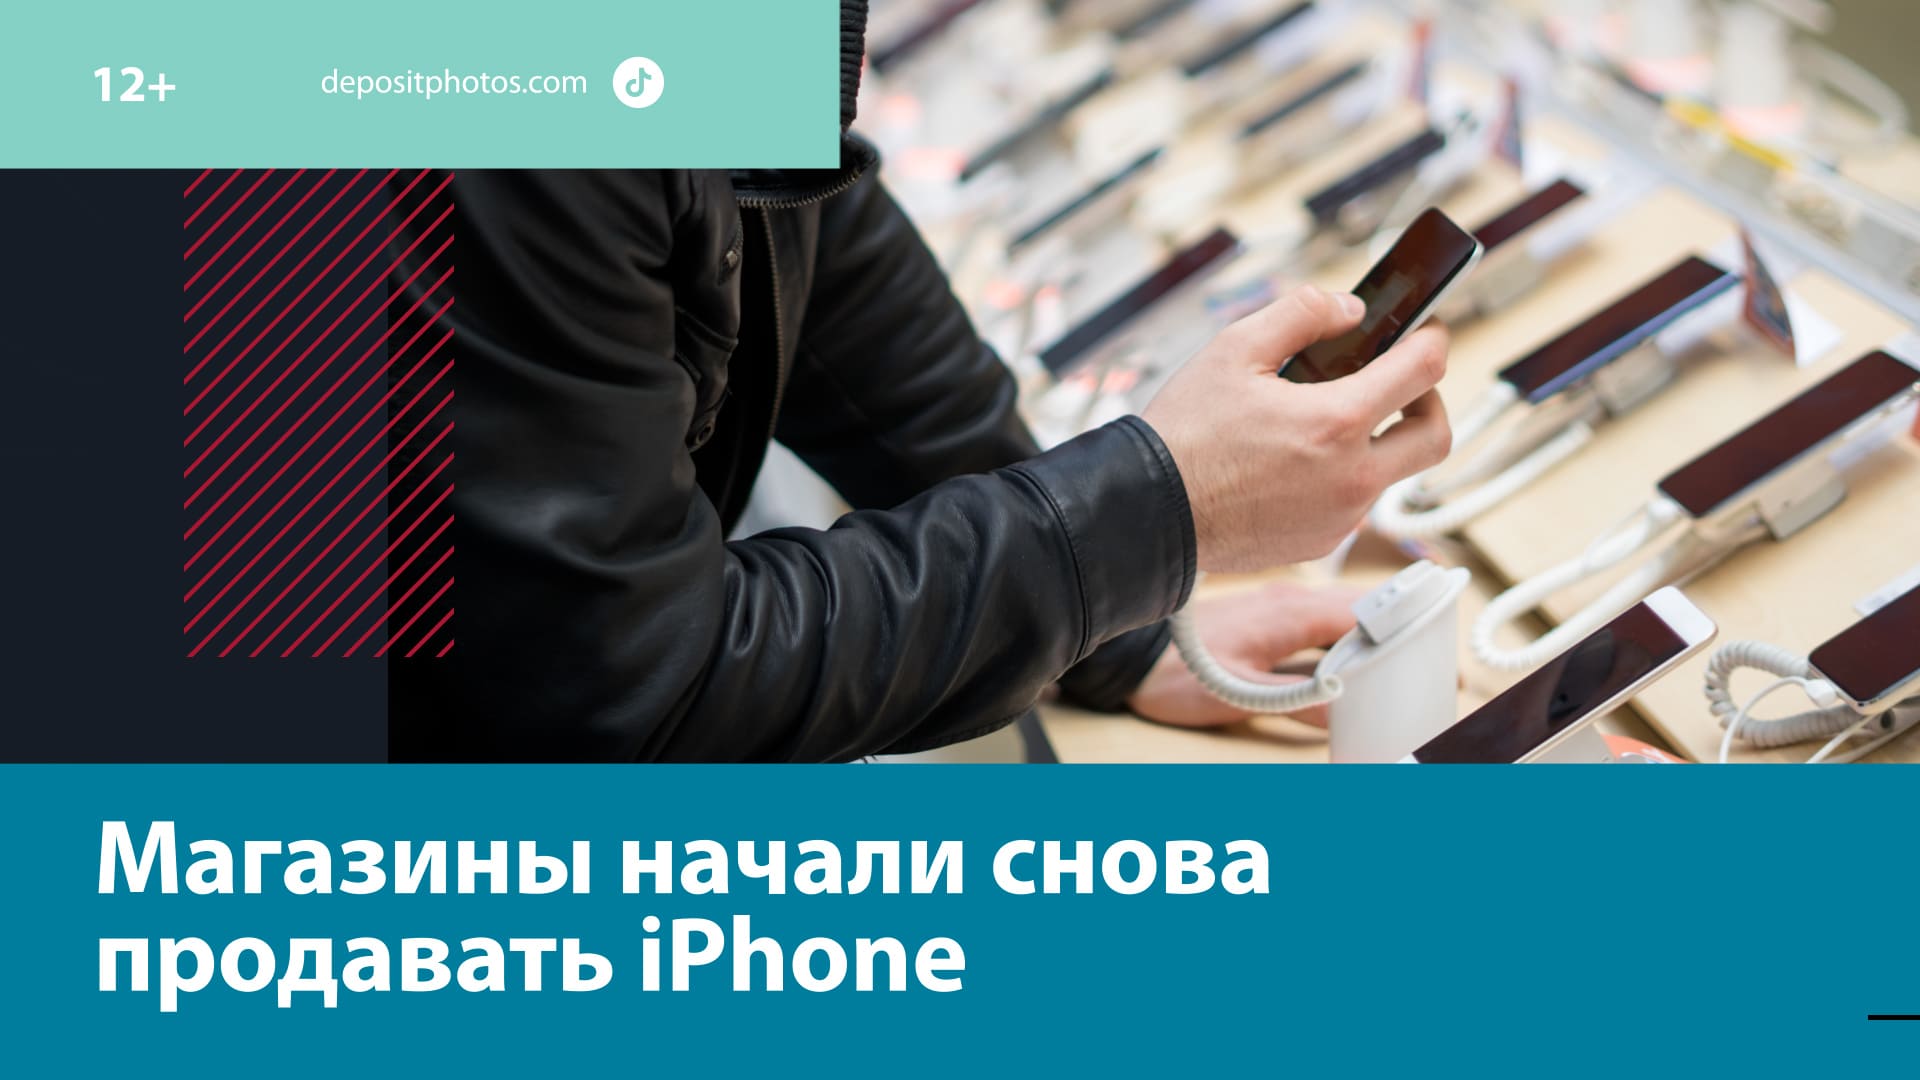 Российские ретейлеры начали снова продавать санкционную технику Apple — Москва FM